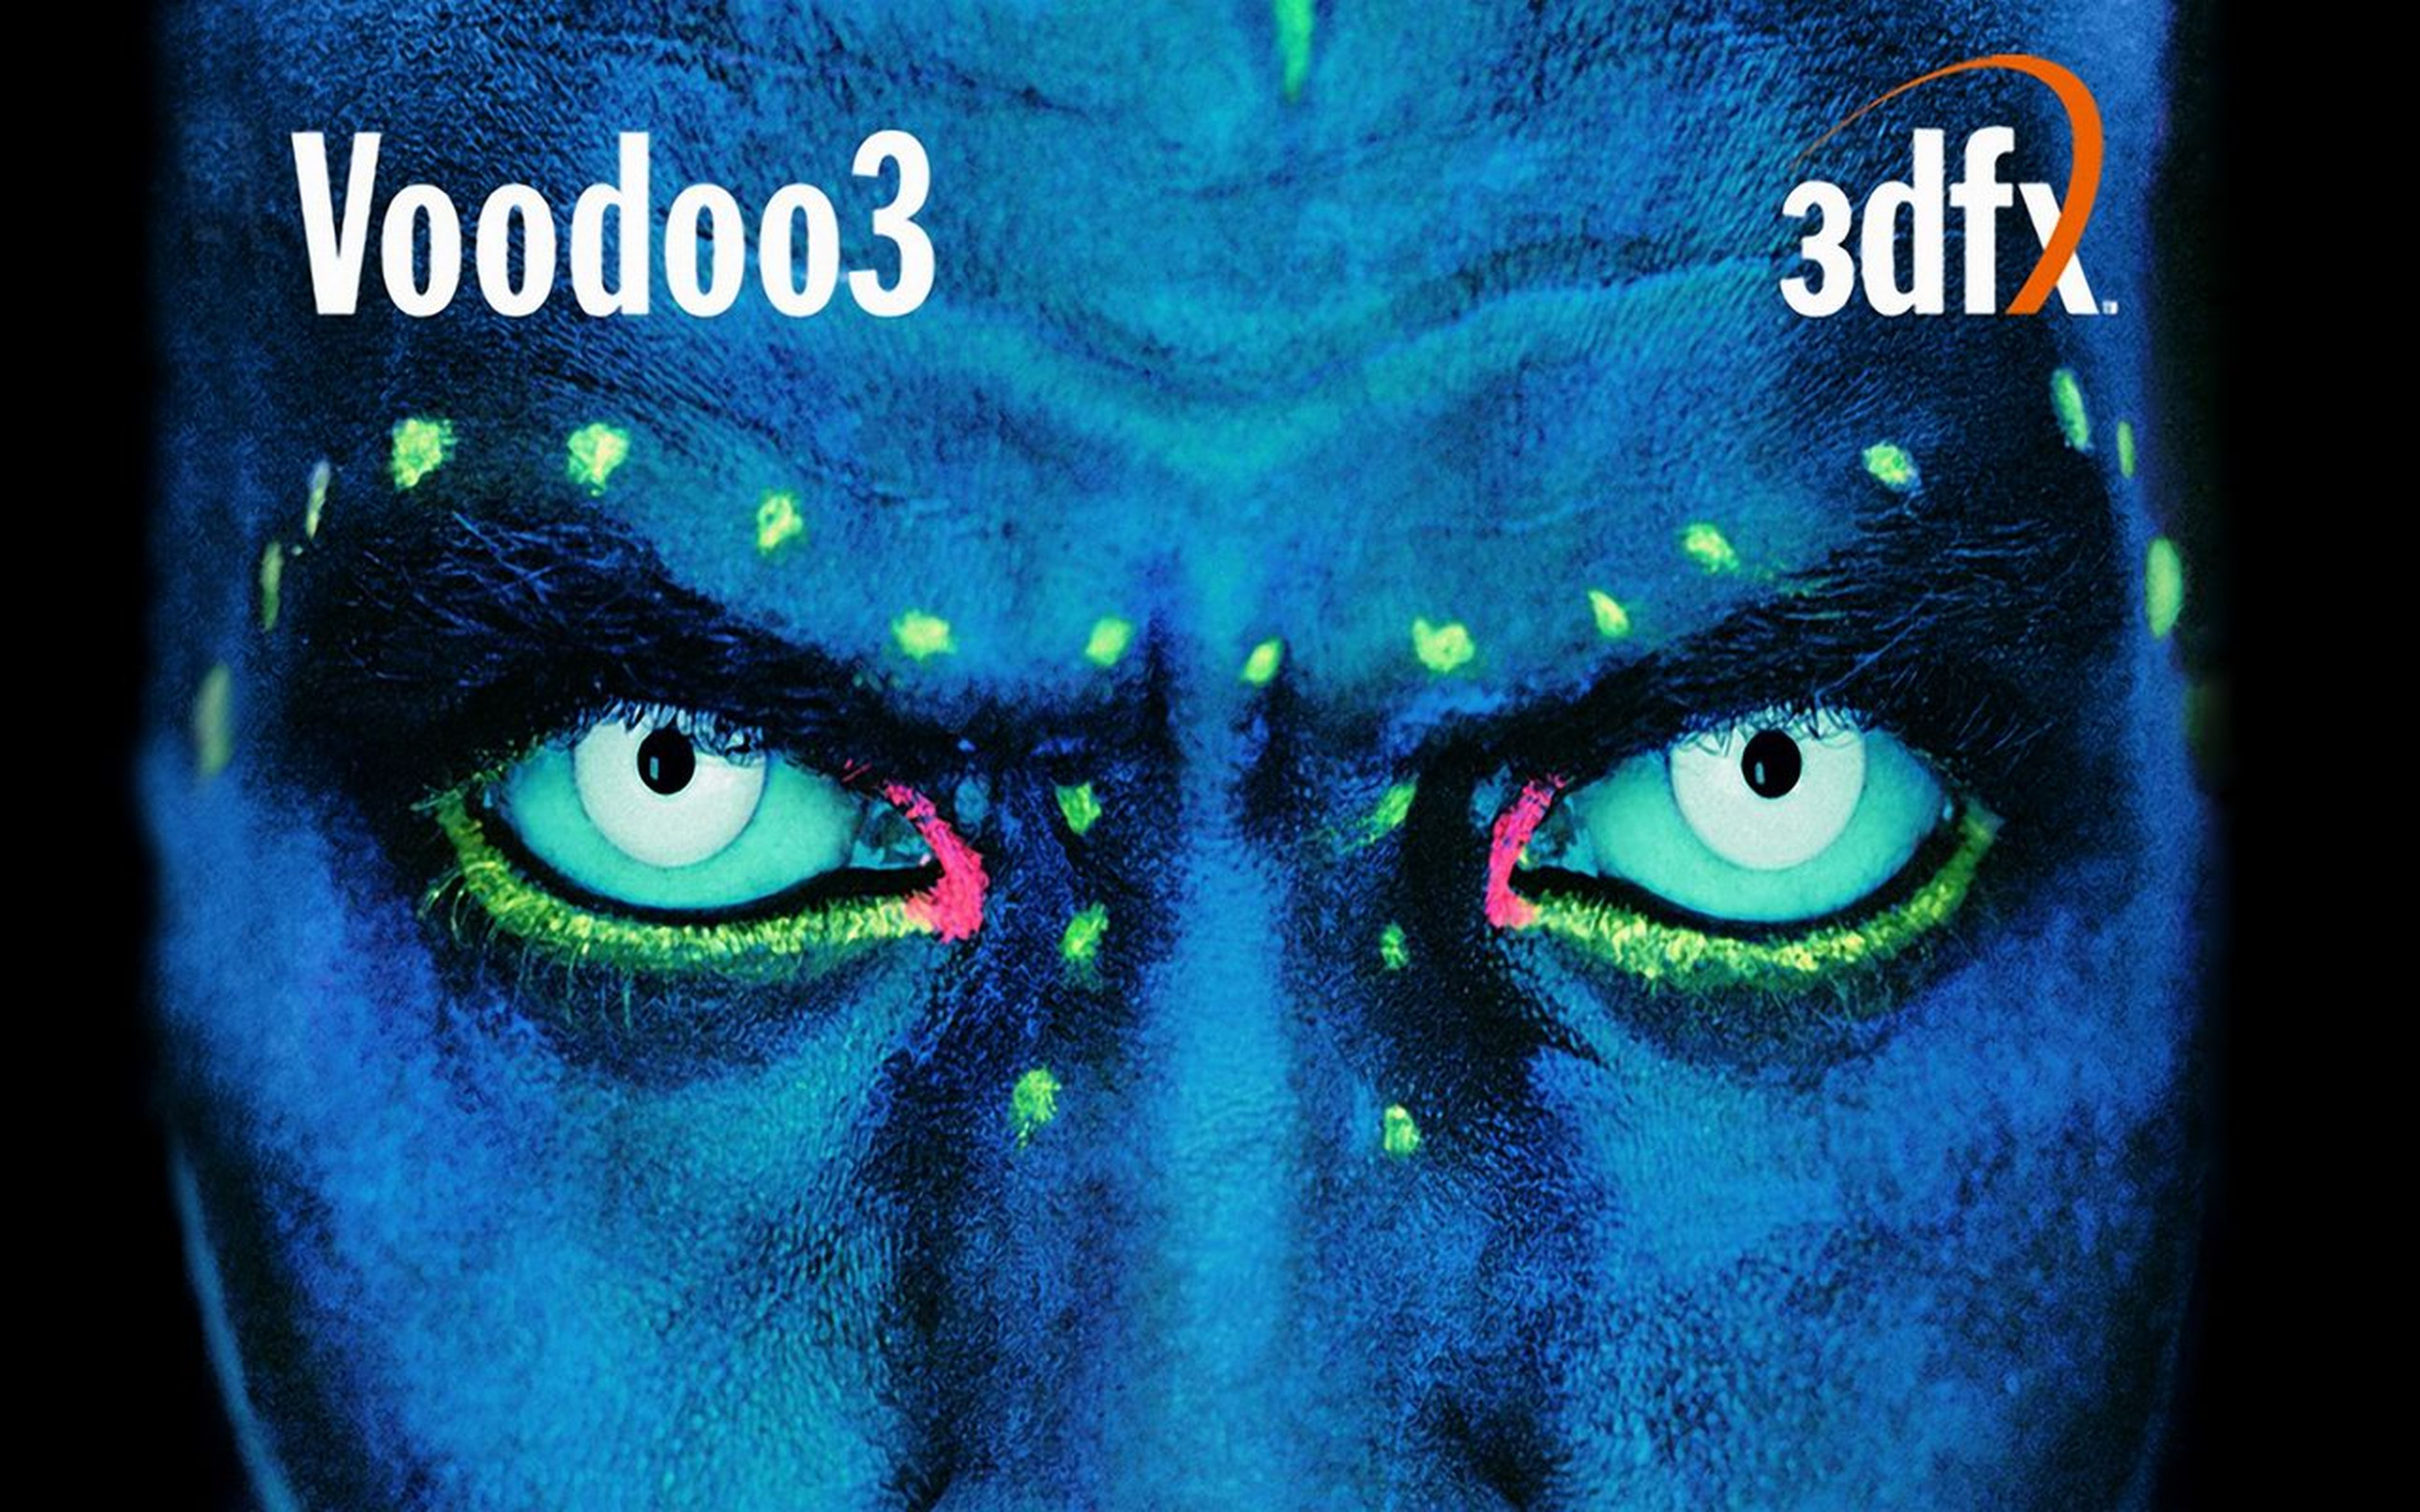 Voodoo 3DFX